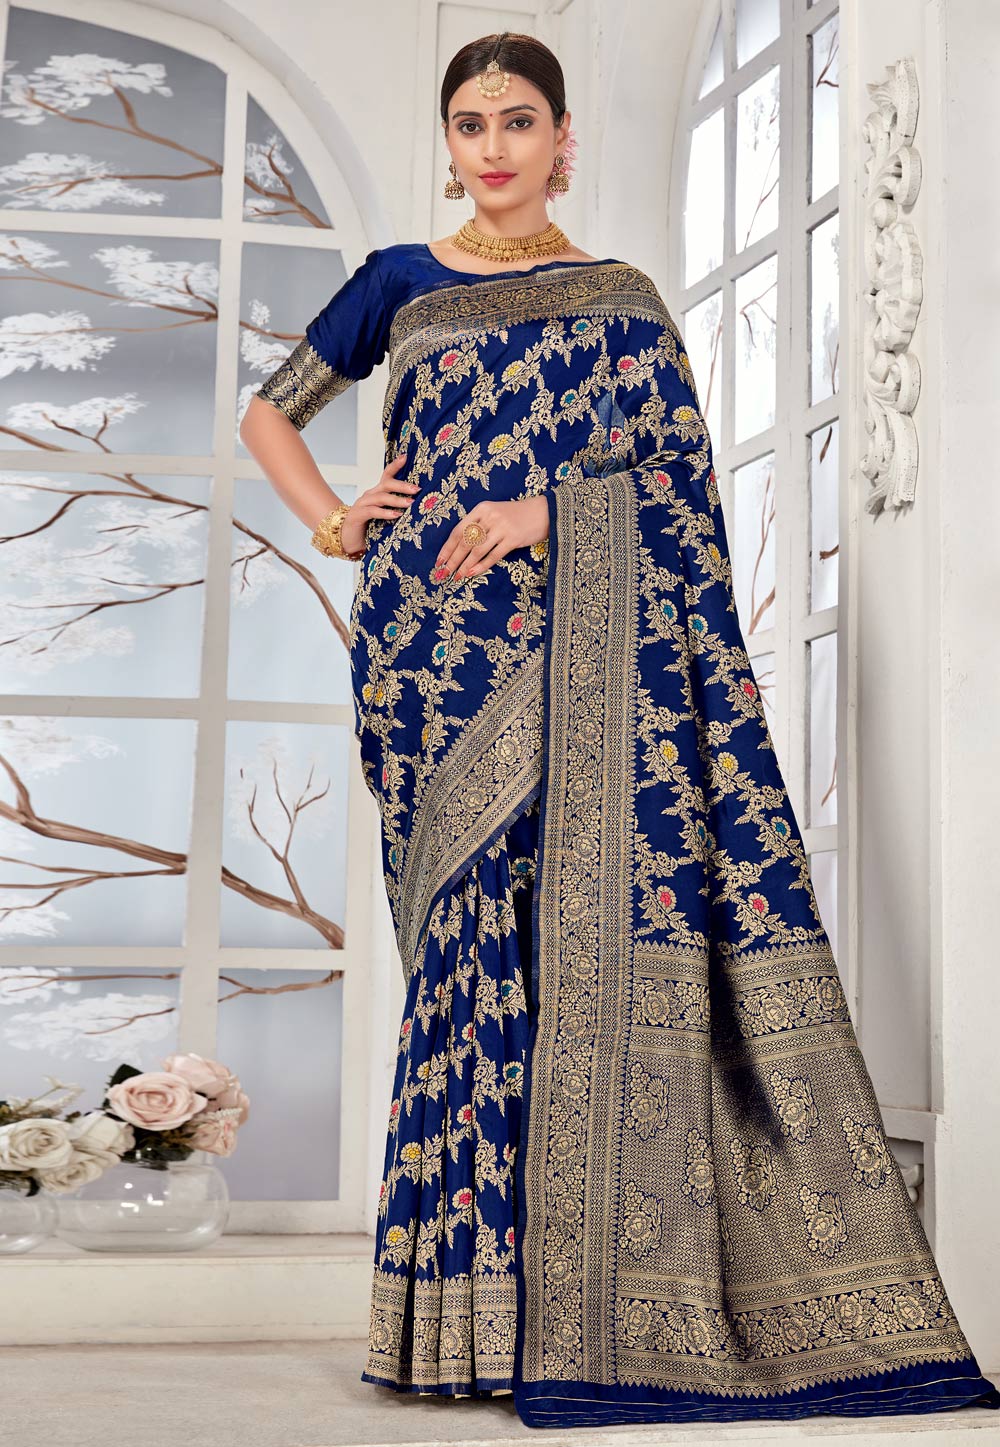 Banarasi Sarees Collection - 30 Latest Designs for Traditional Look | Saree  designs, Saree look, Banarasi sarees